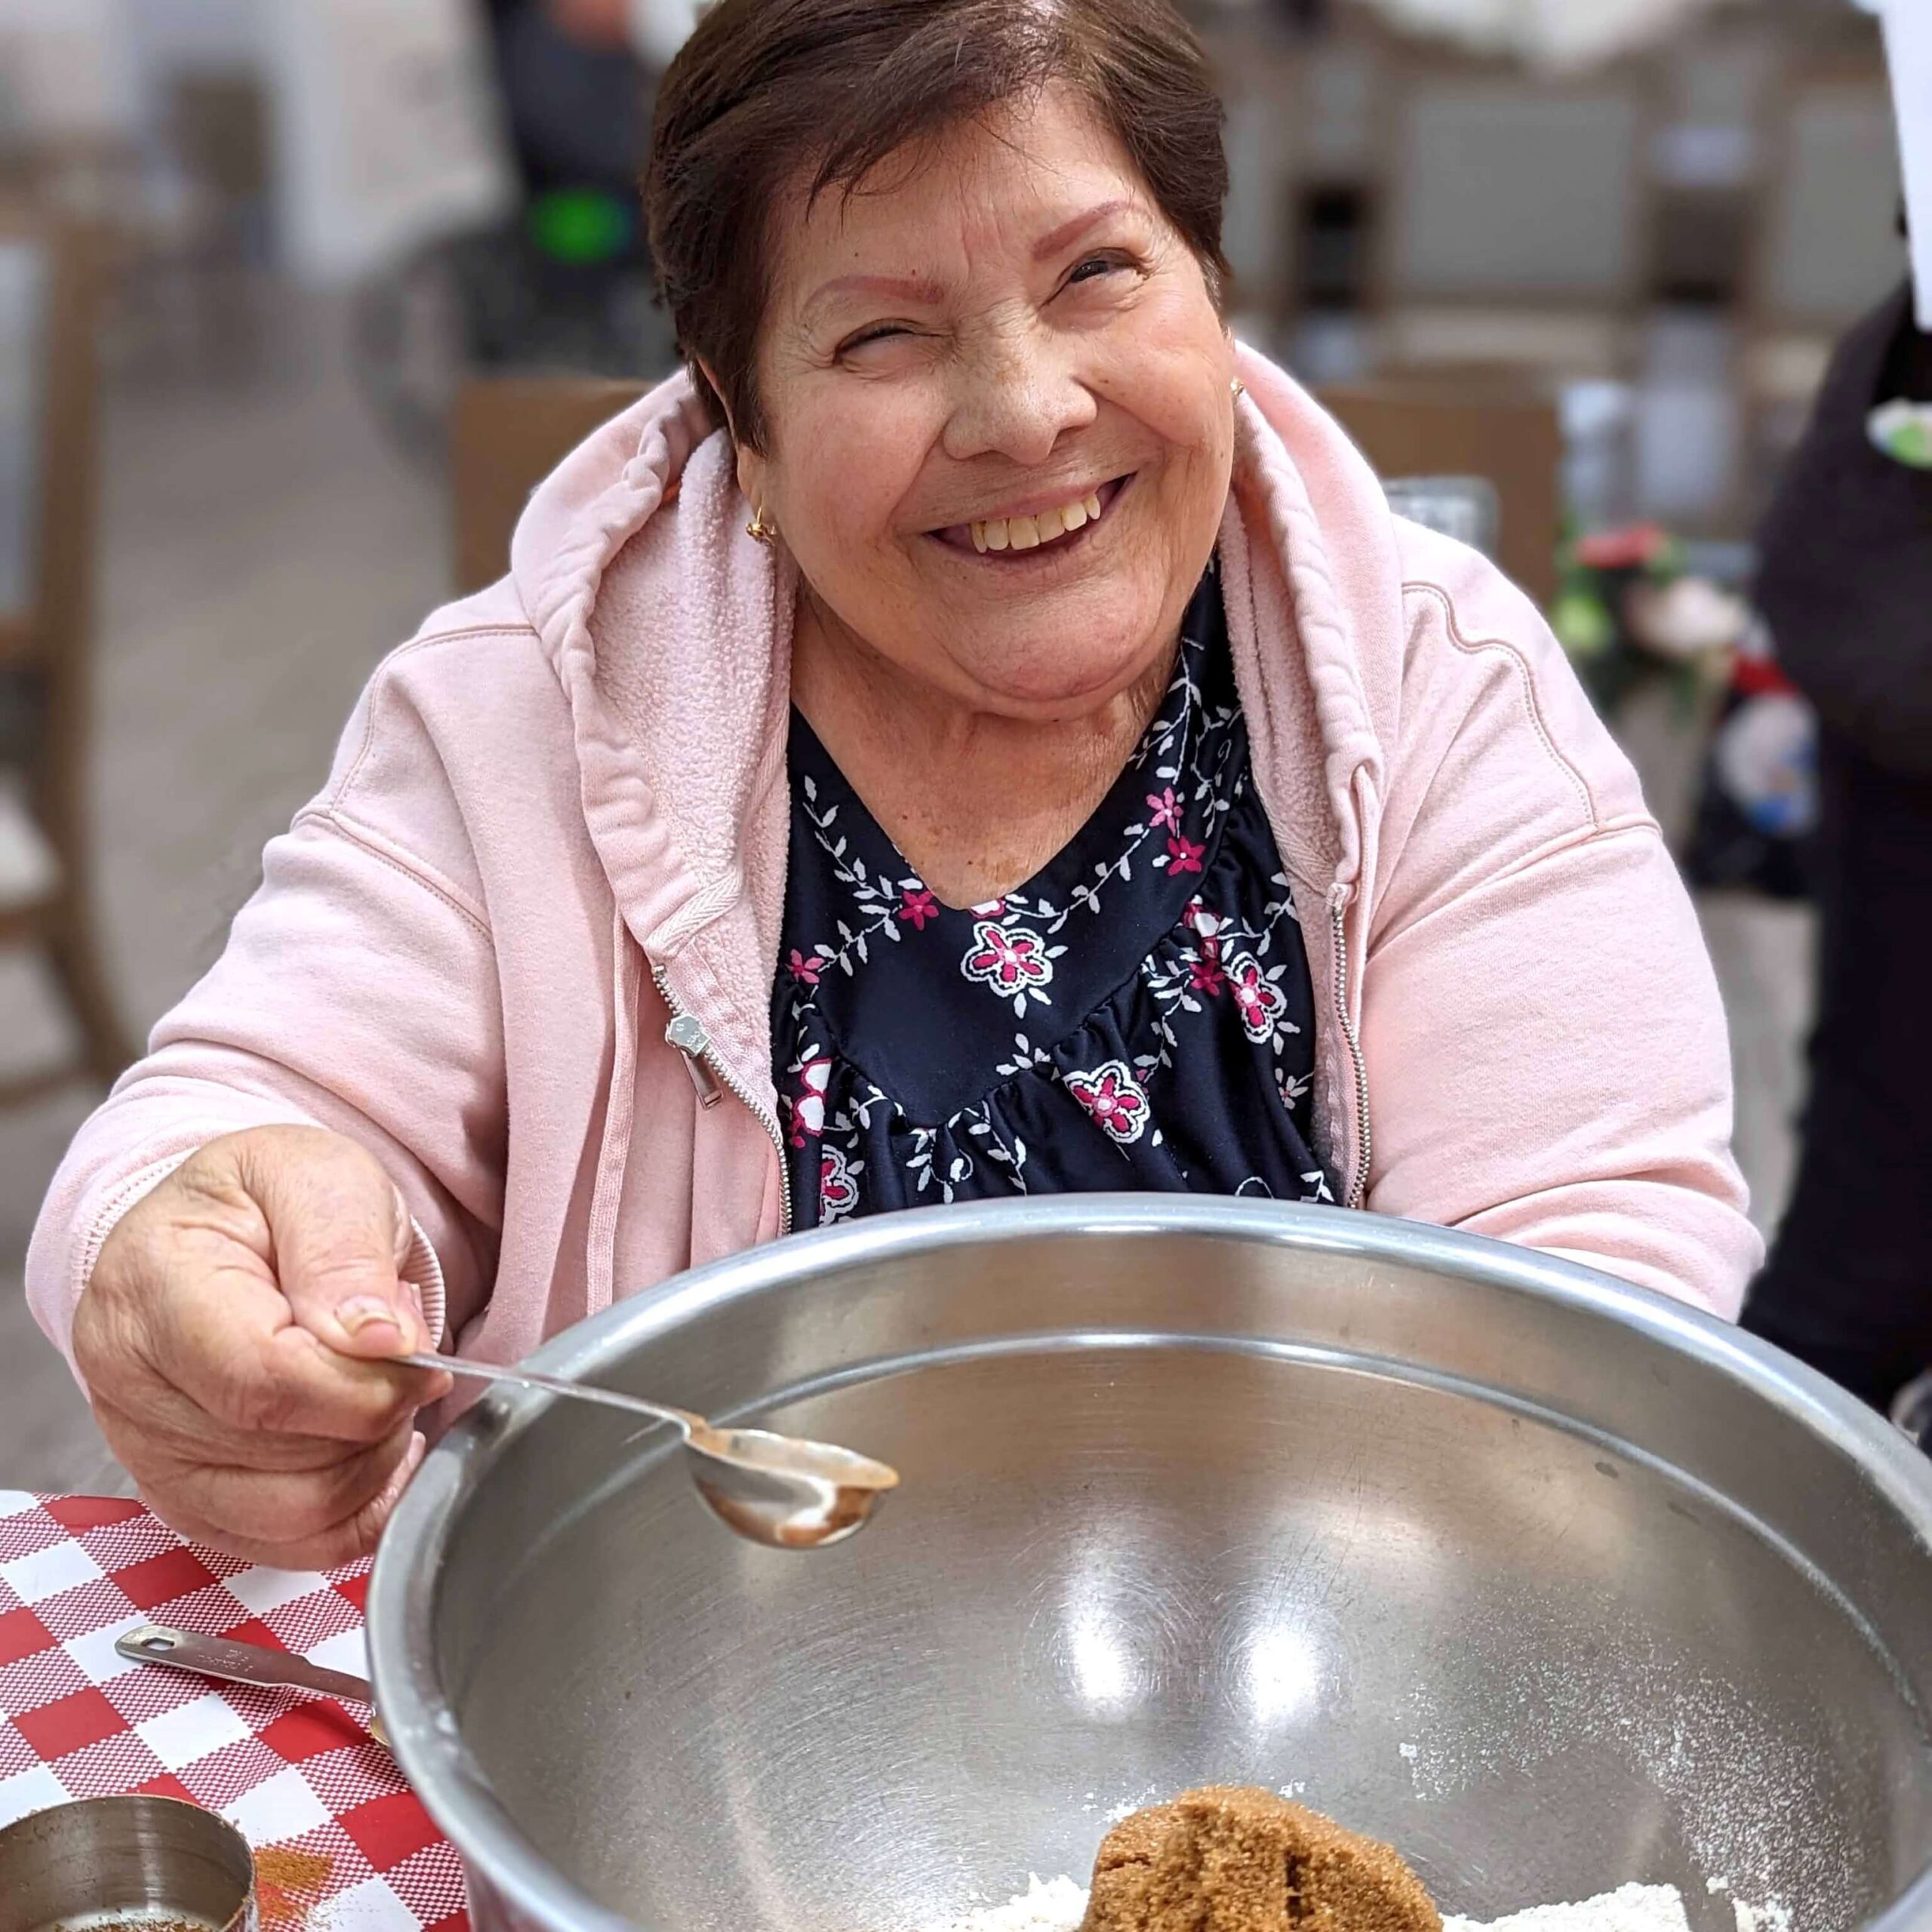 Elderly woman mixing baking ingredients.